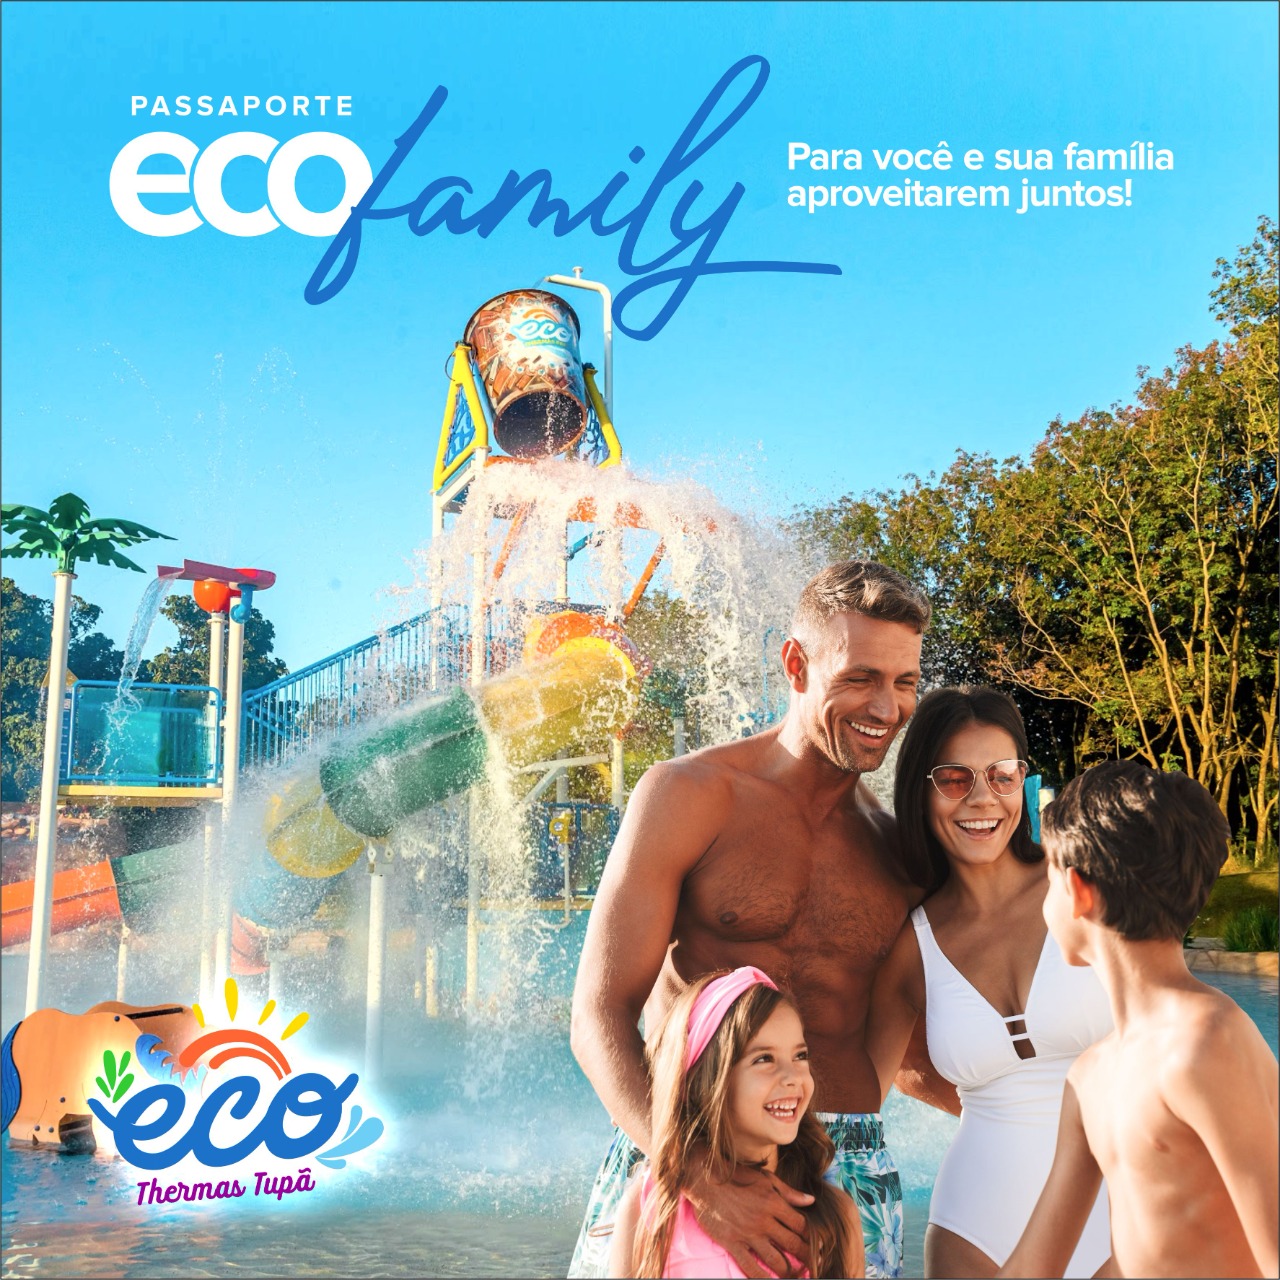 Eco Thermas Tupã lança Passaporte Eco Family em edição limitada